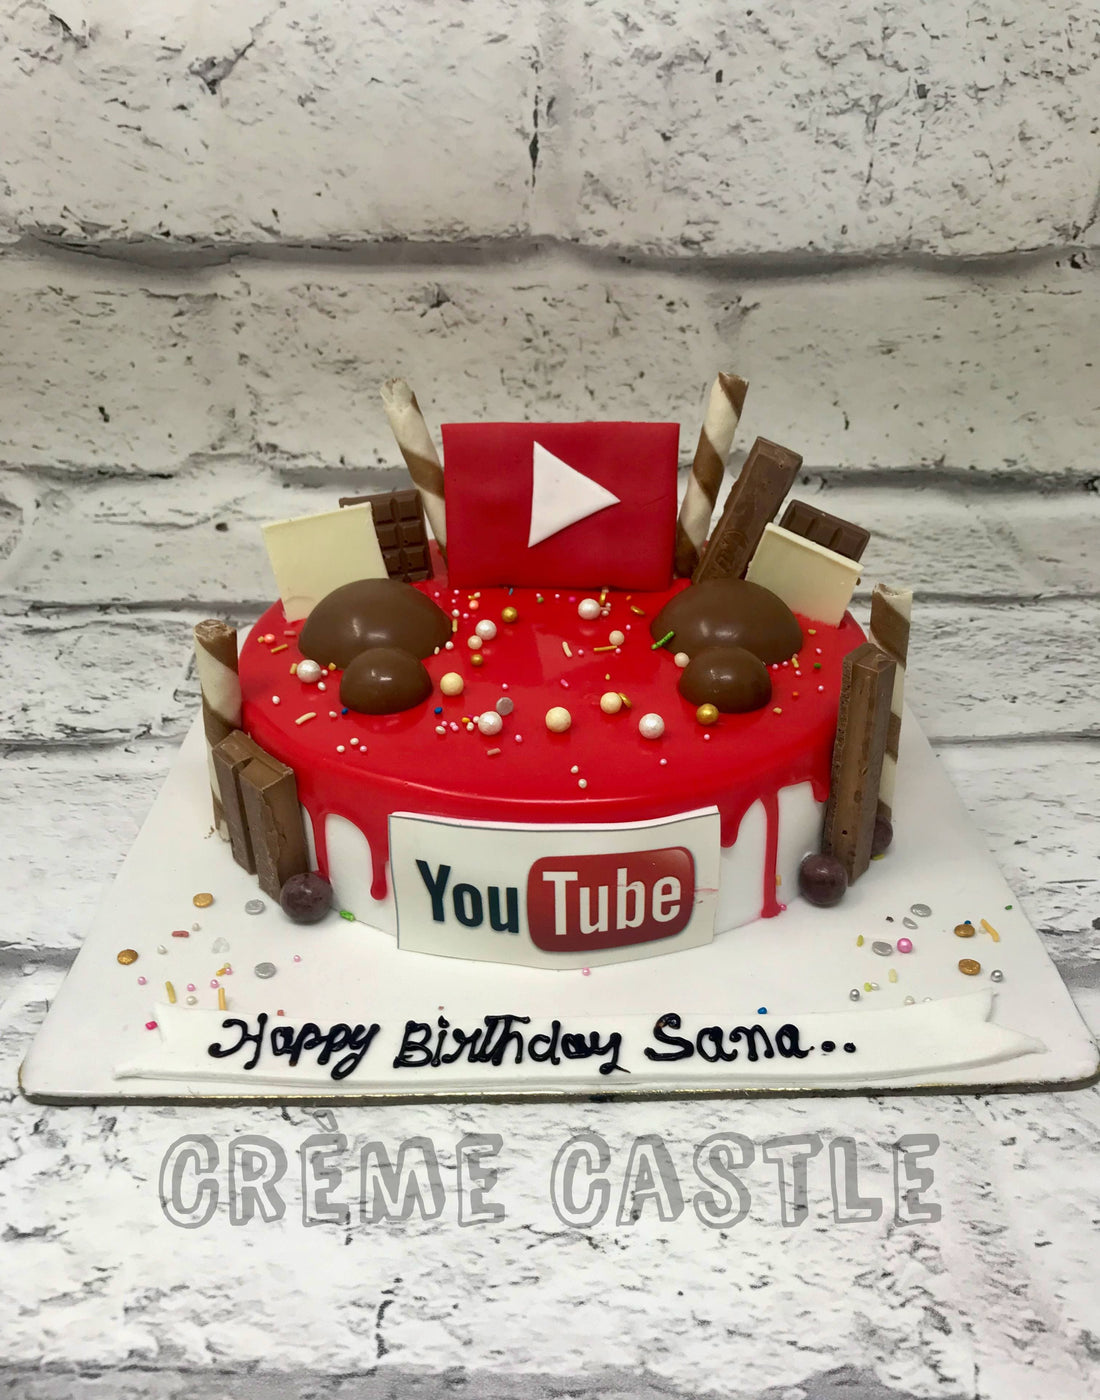 YouTube Theme Cake